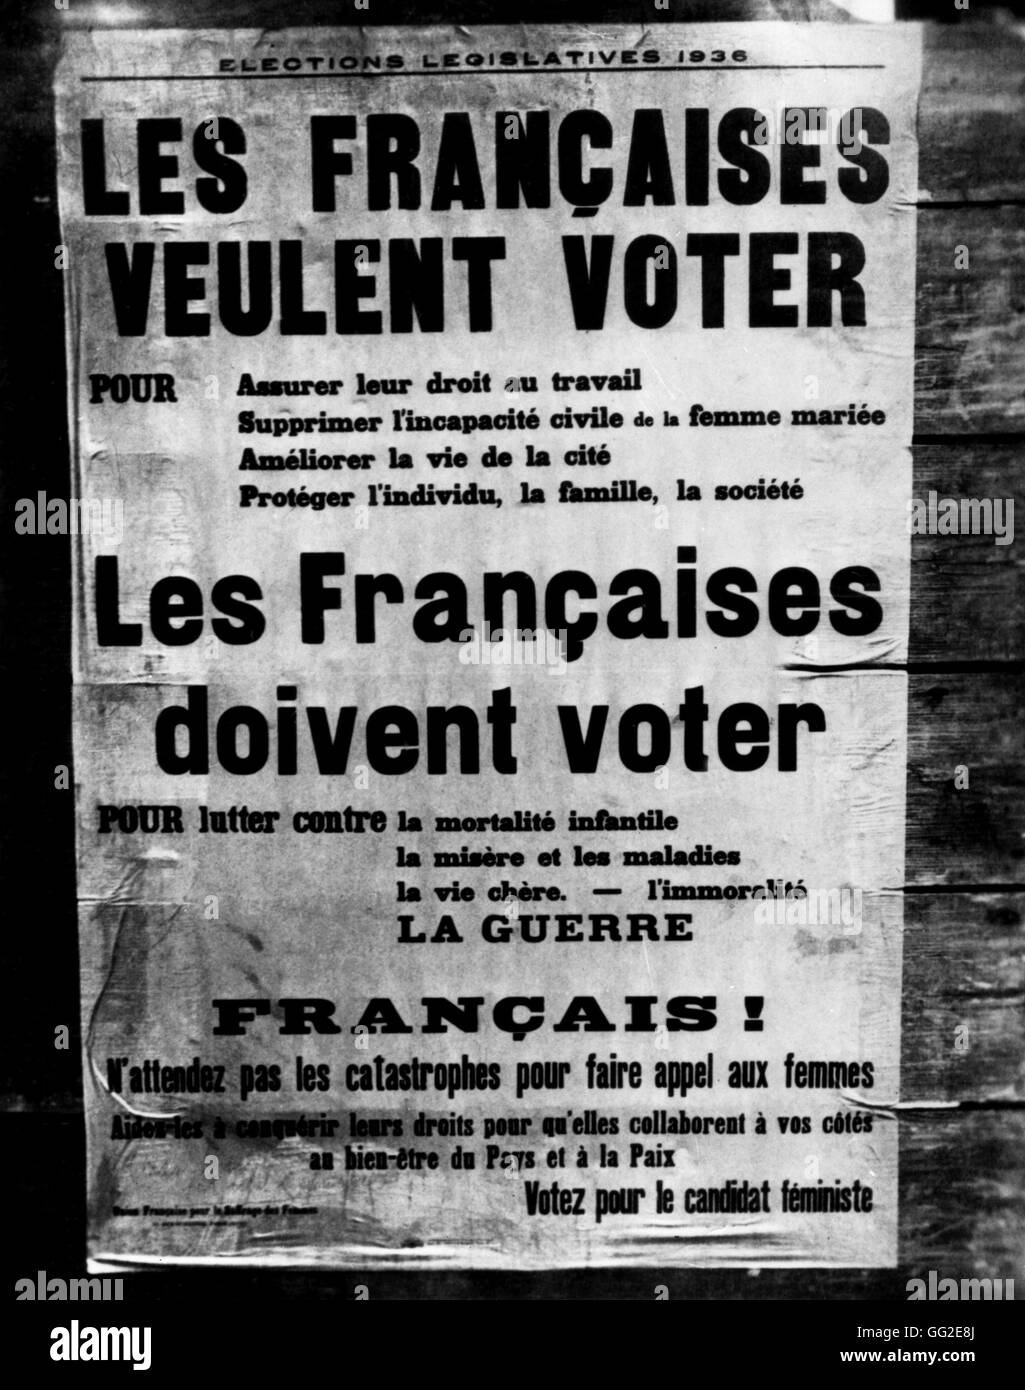 Appel de l'affiche électorale pour le vote des femmes en France. 30 avril 1936 Banque D'Images